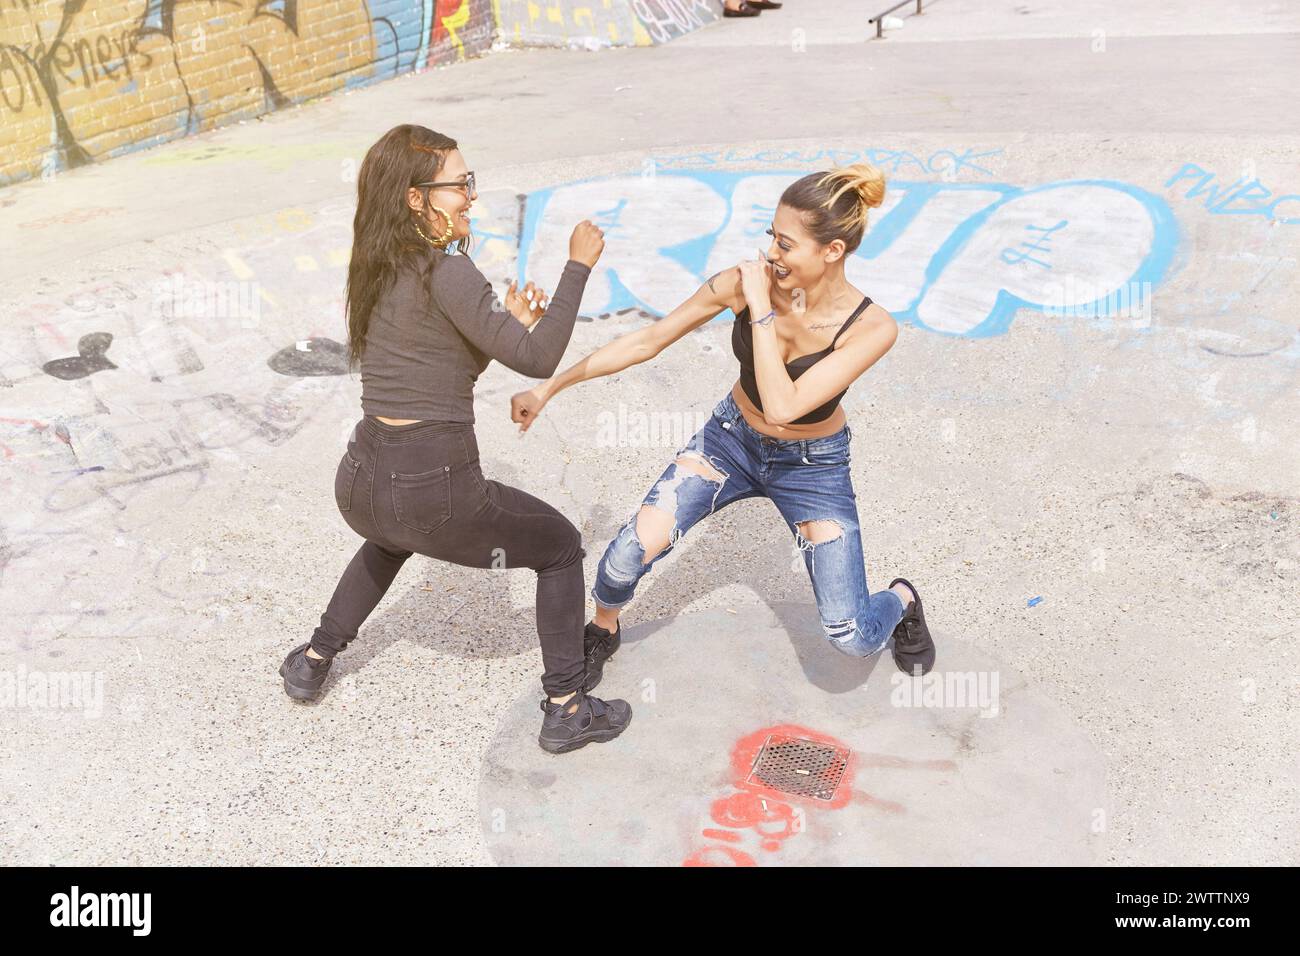 Zwei Frauen tanzen auf einer mit Graffiti bedeckten Straße Stockfoto